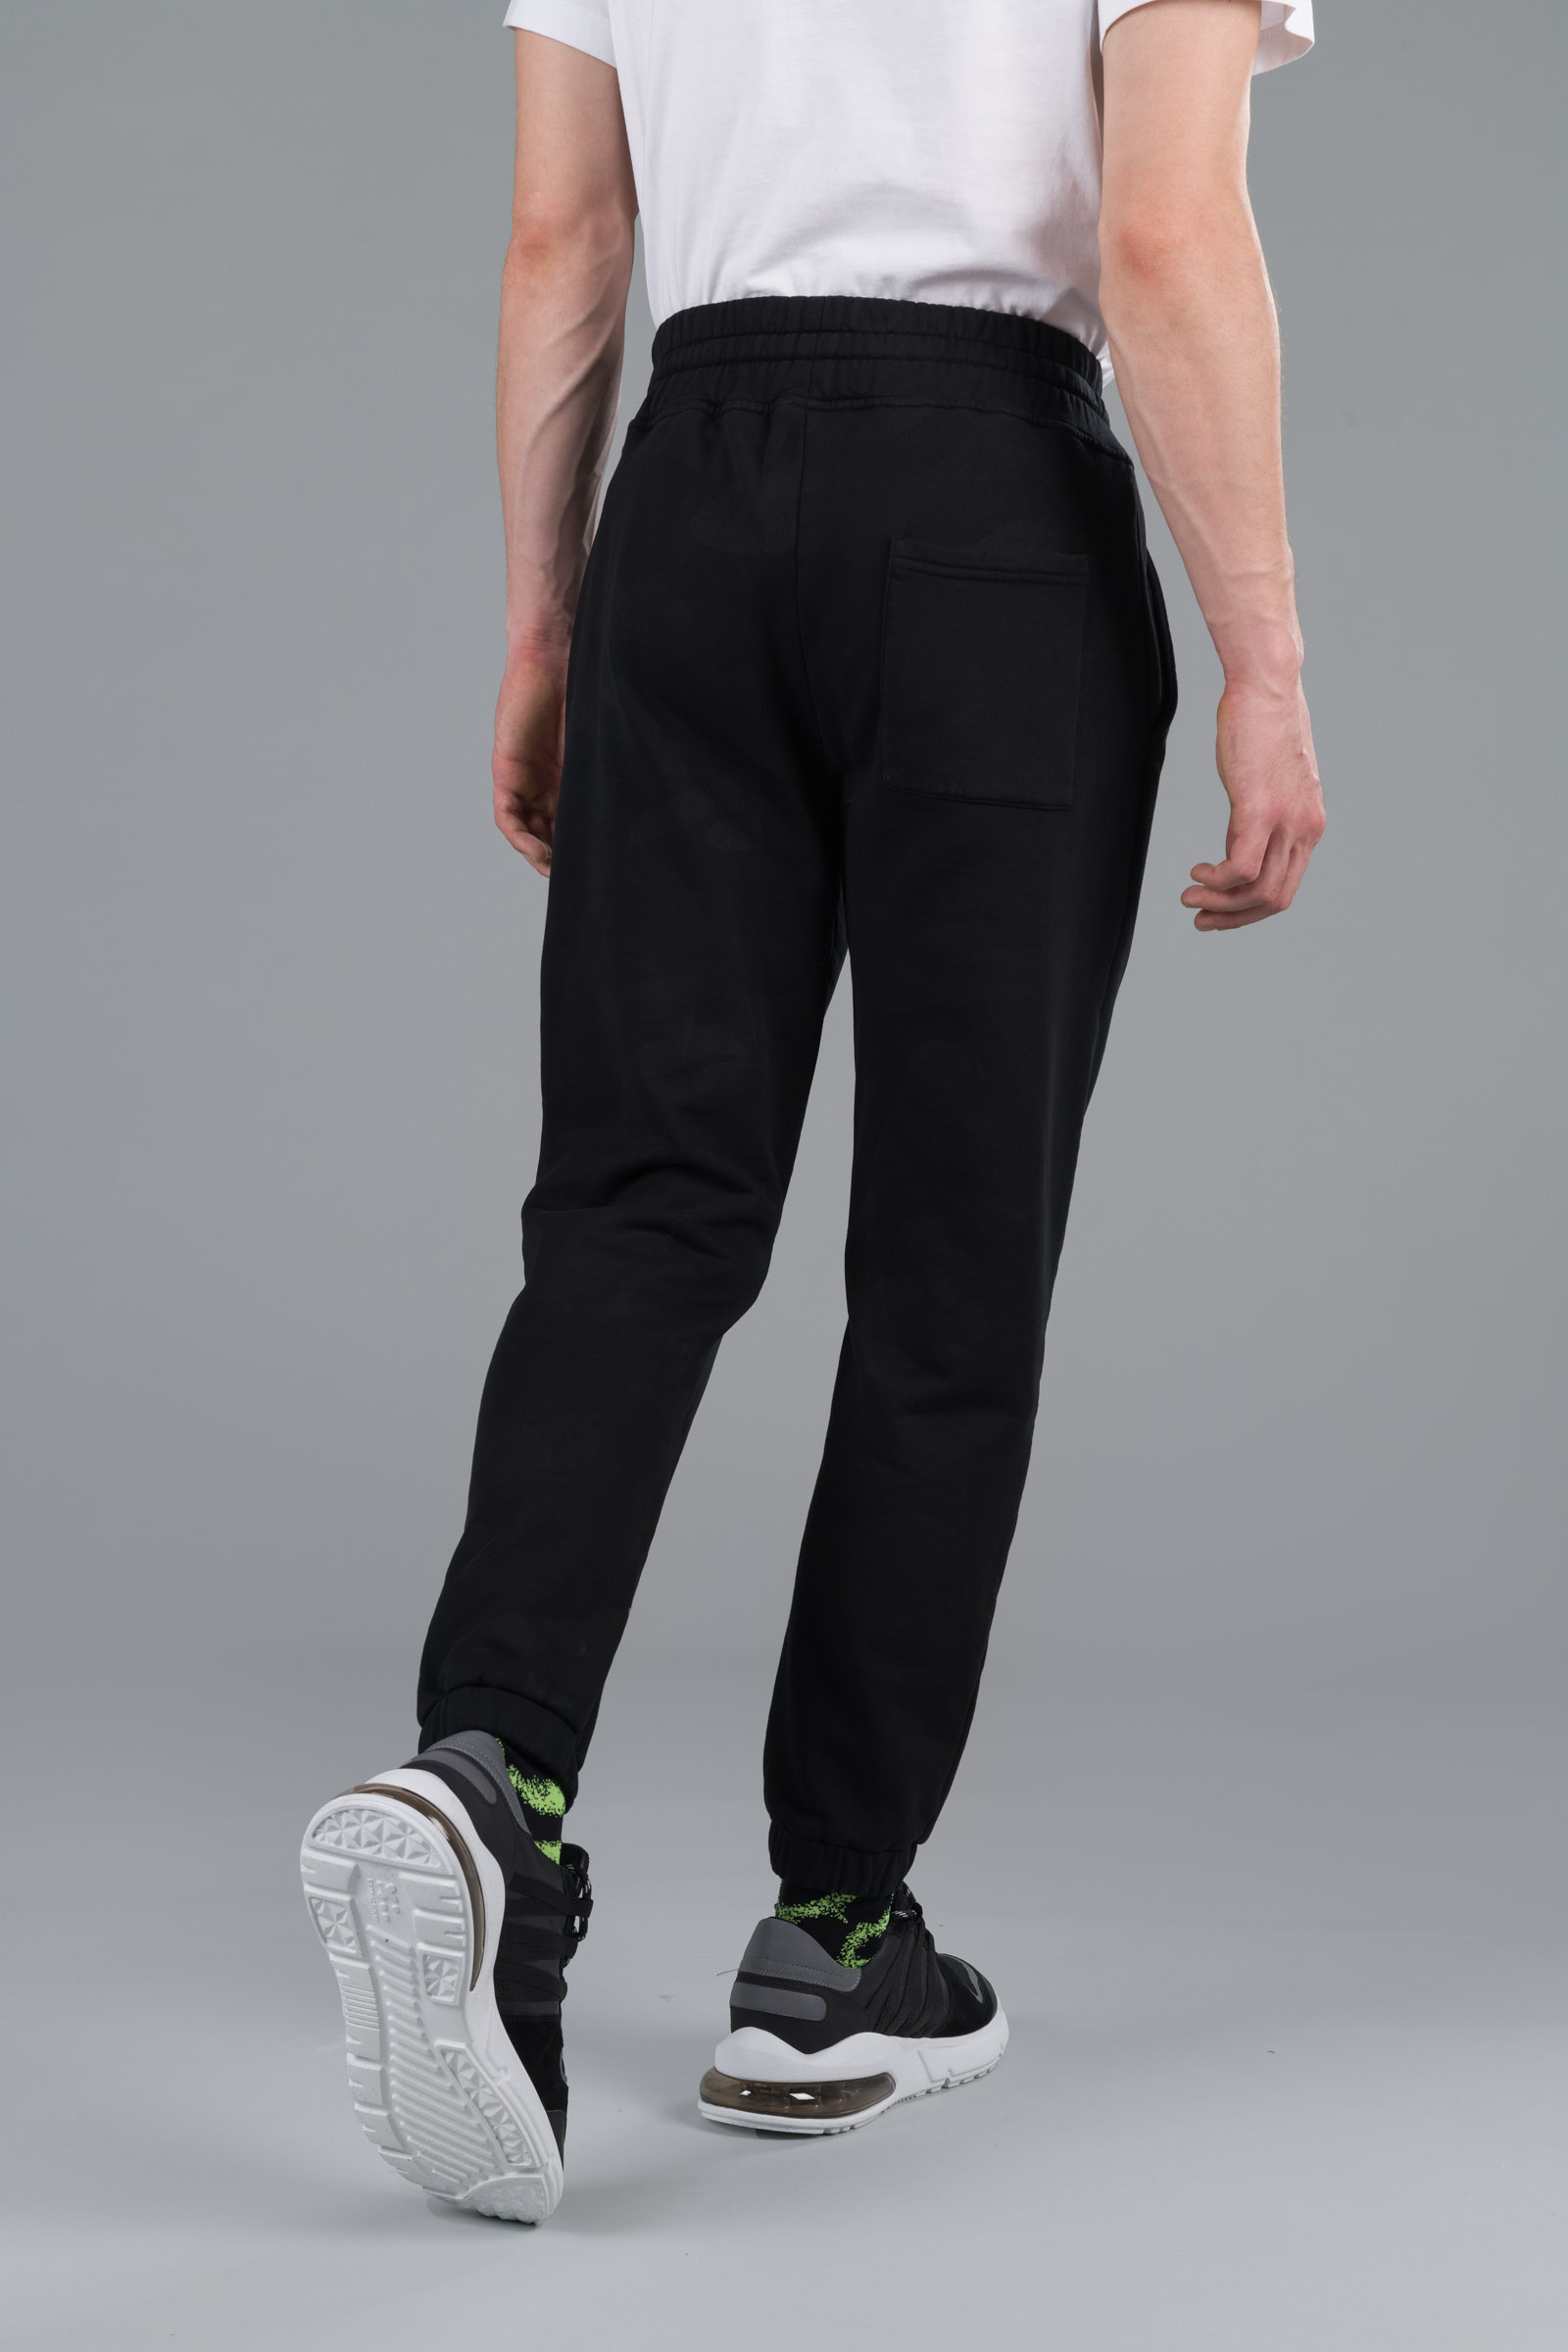 CAMO PANTS - BLACK CAMOUFLAGE - Hydrogen - Luxury Sportwear